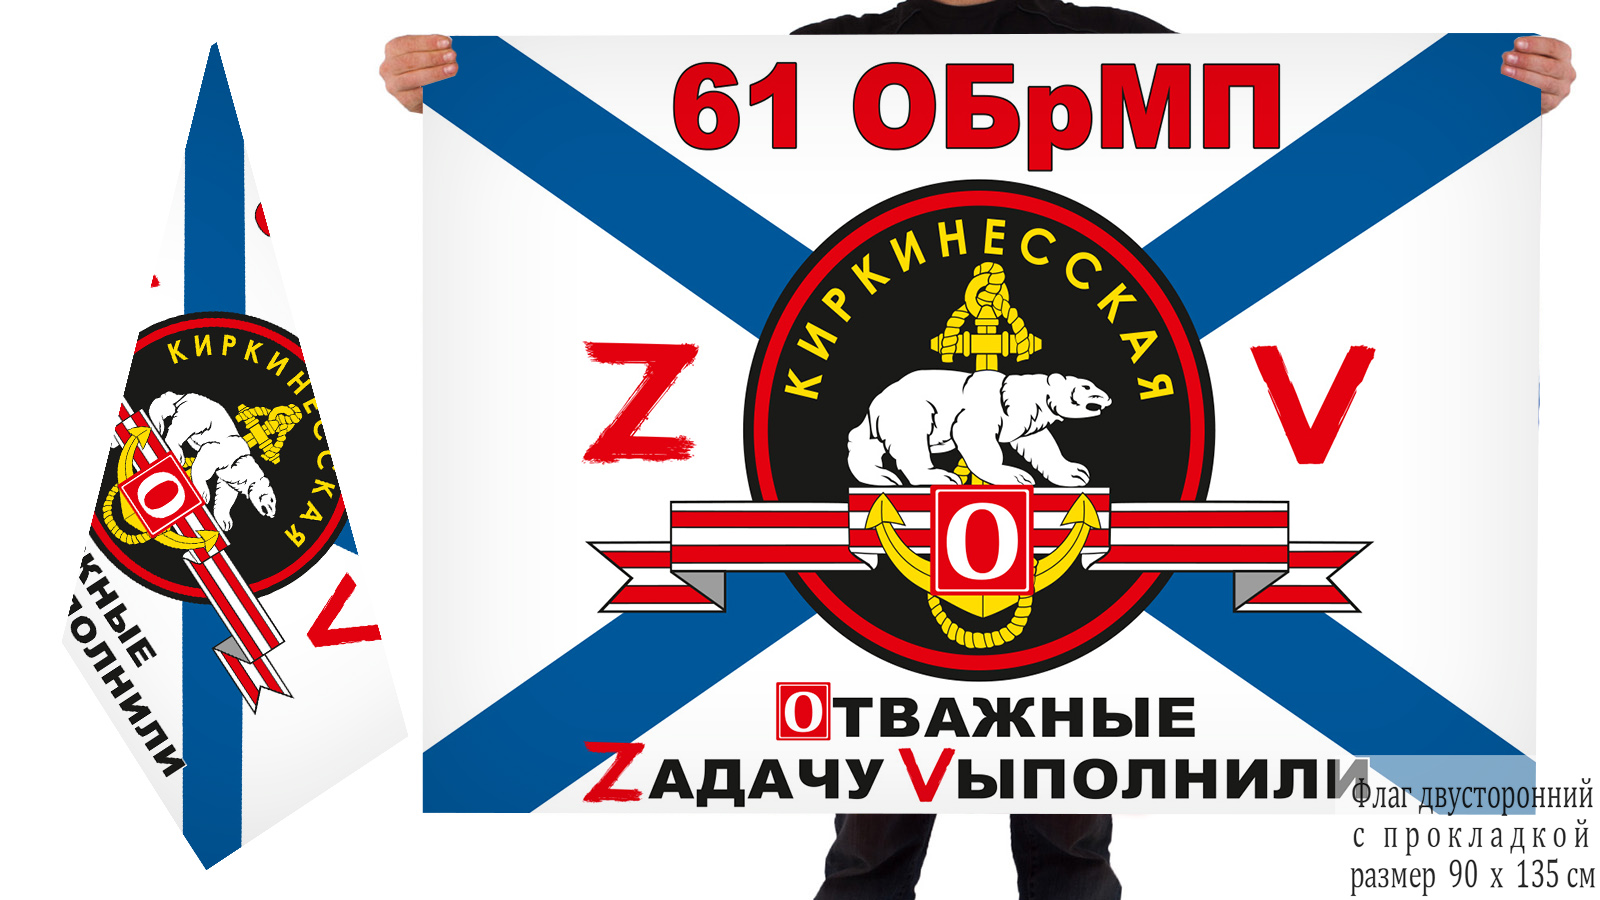 Двусторонний флаг 61 ОБрМП "Спецоперация Z"